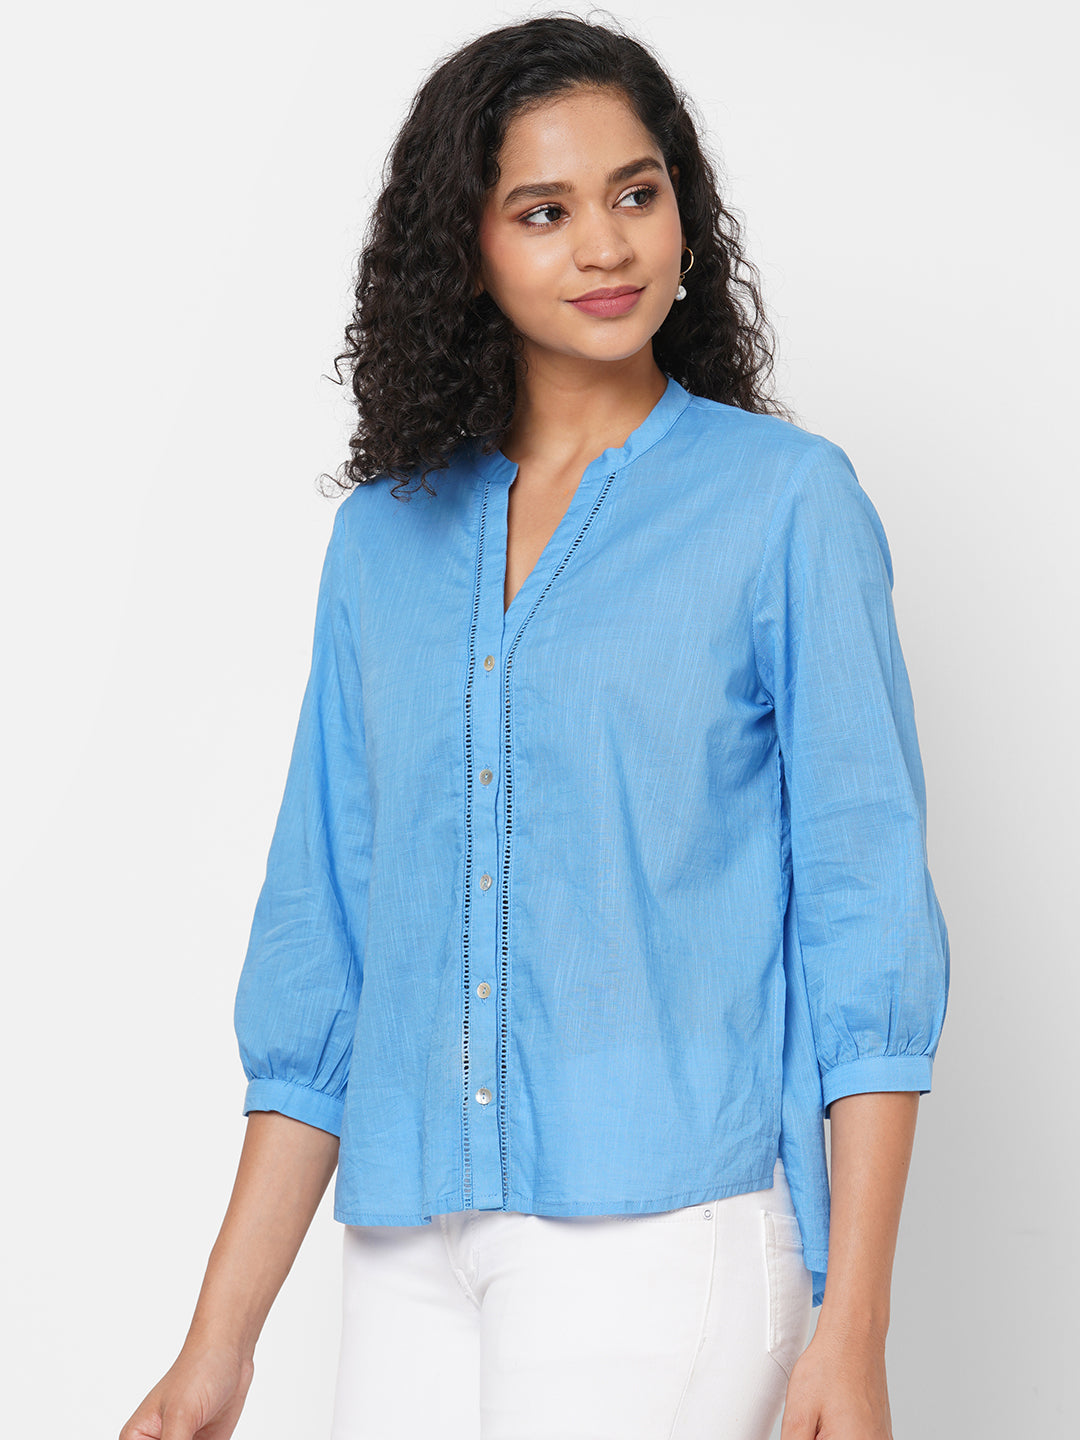 Women's Cotton Blue Regular Fit Blouse